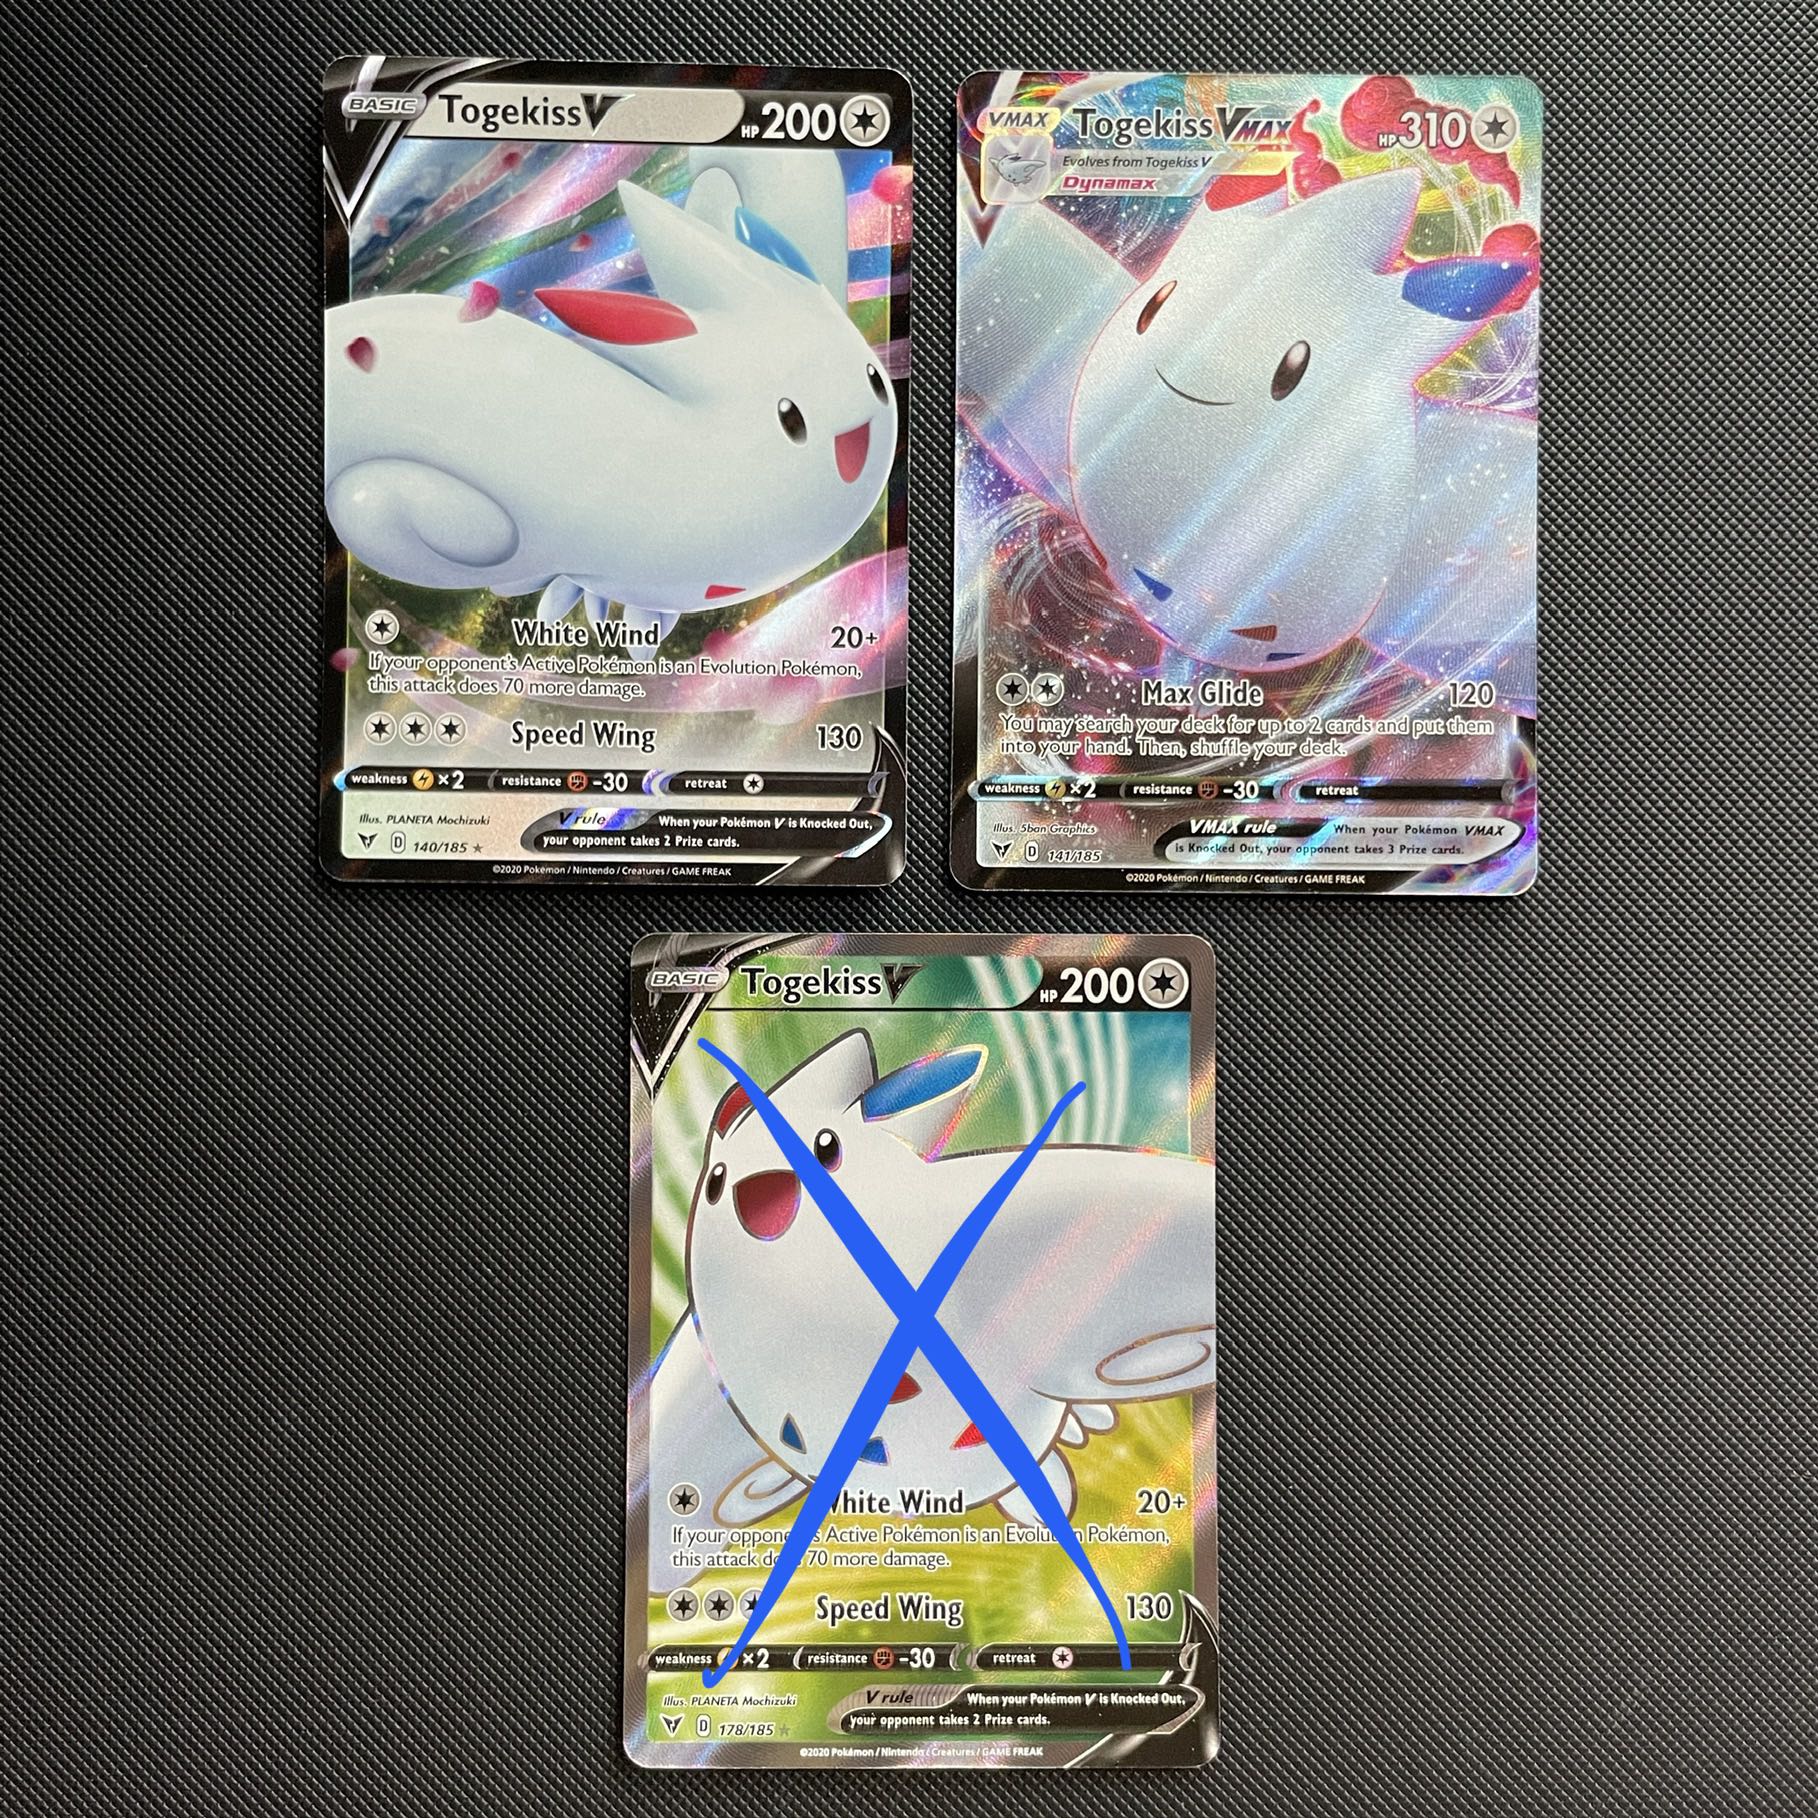 Togekiss (rara tipo fada) - Pokémon TCG Cards (original em